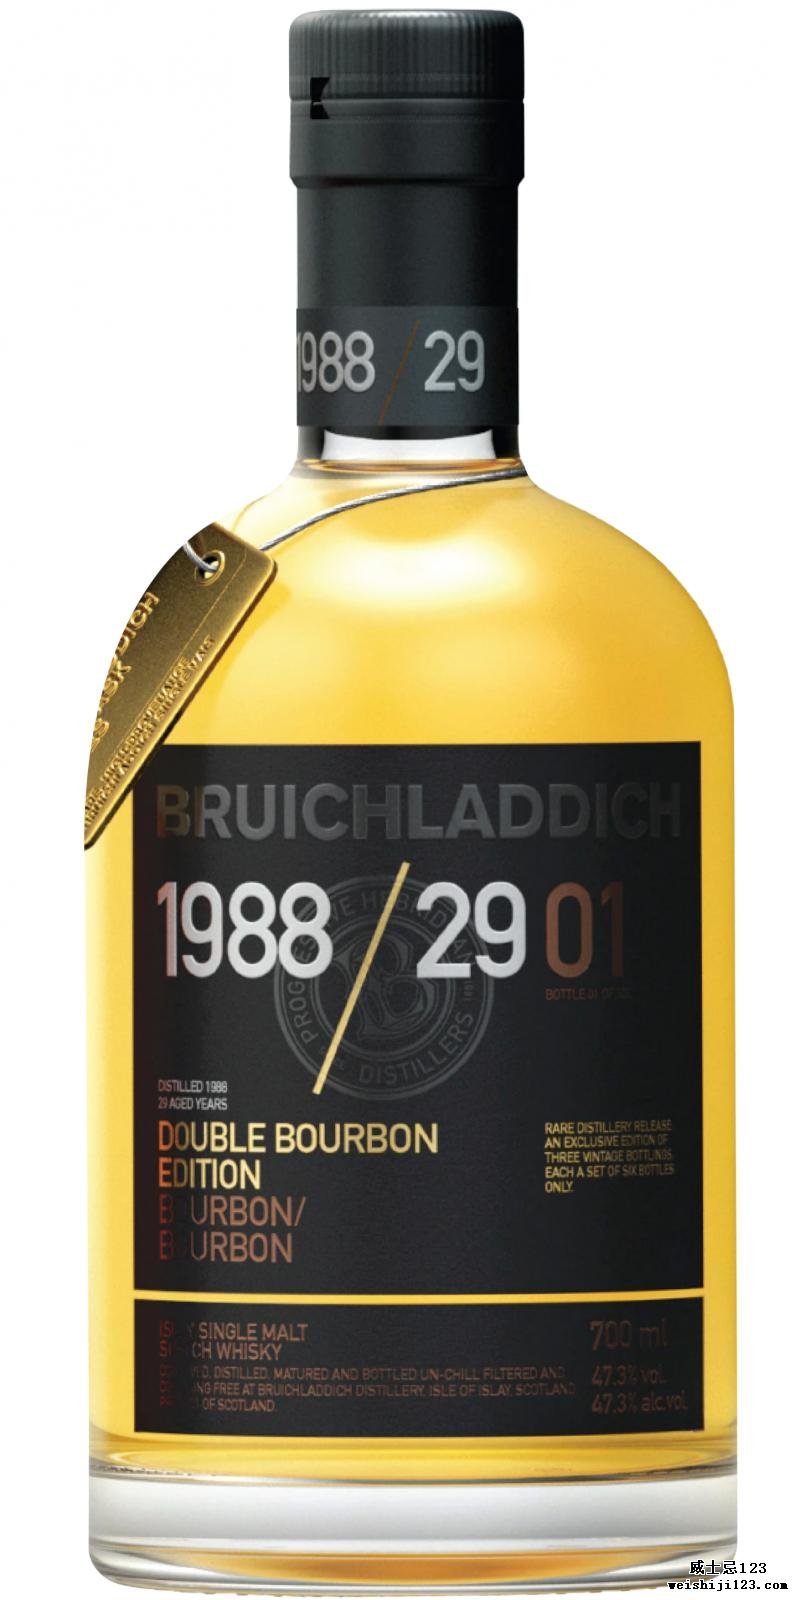 Bruichladdich 1988